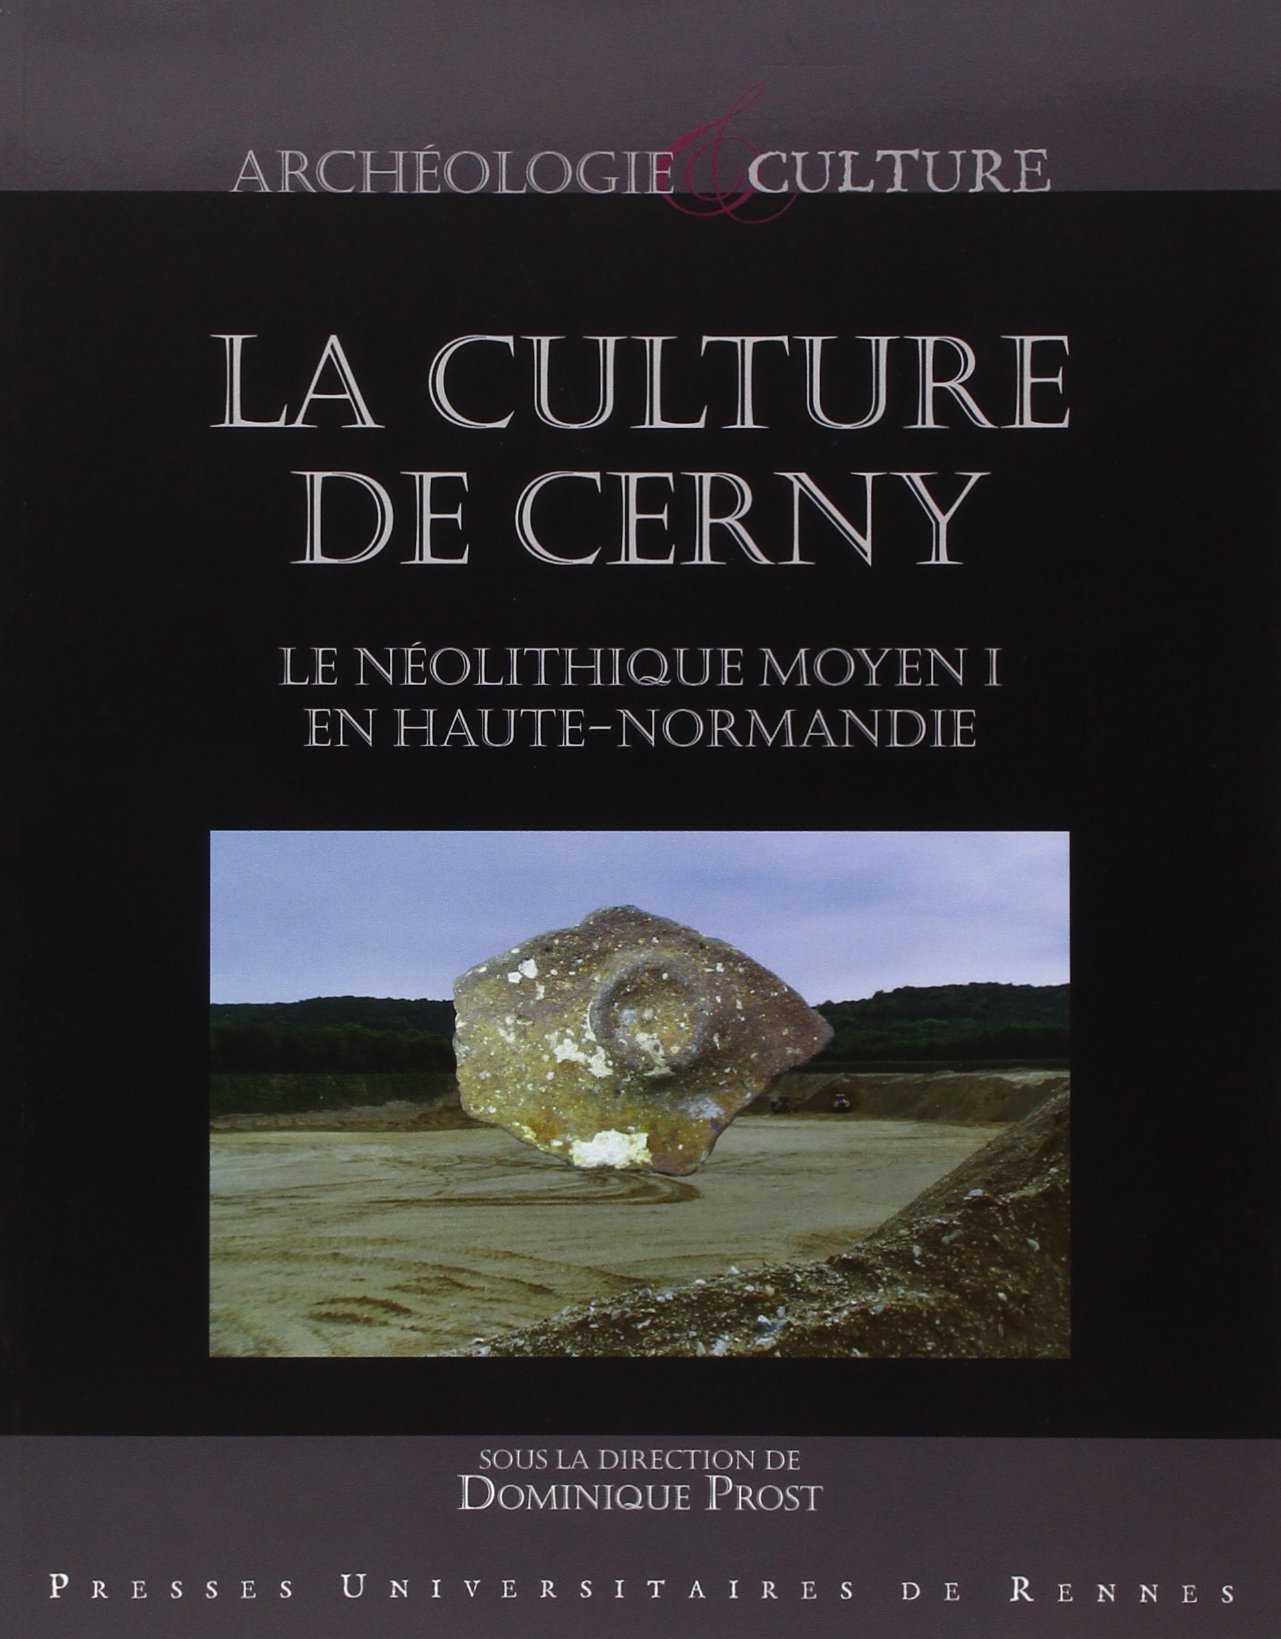 La culture de Cerny. Le Néolithique moyen I en Haute-Normandie, 2015, 300 p.